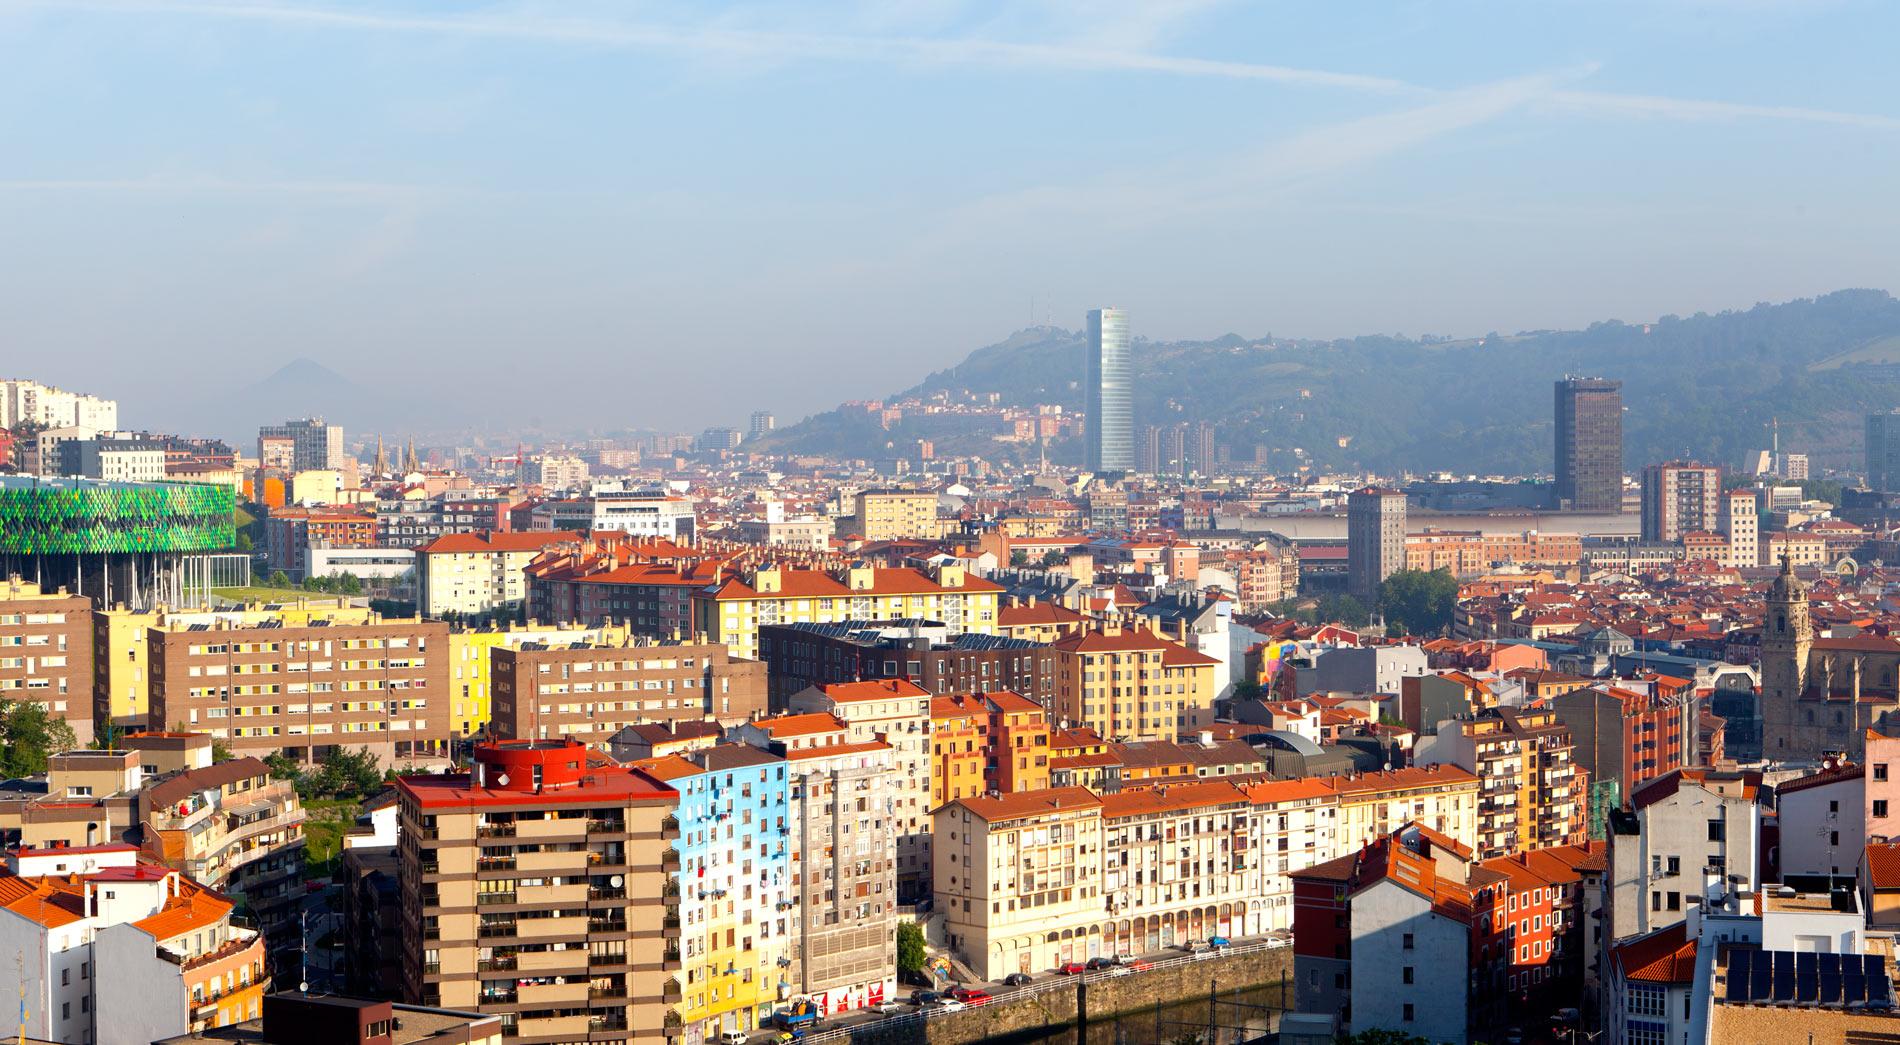 Hotel Gran Bilbao Dış mekan fotoğraf